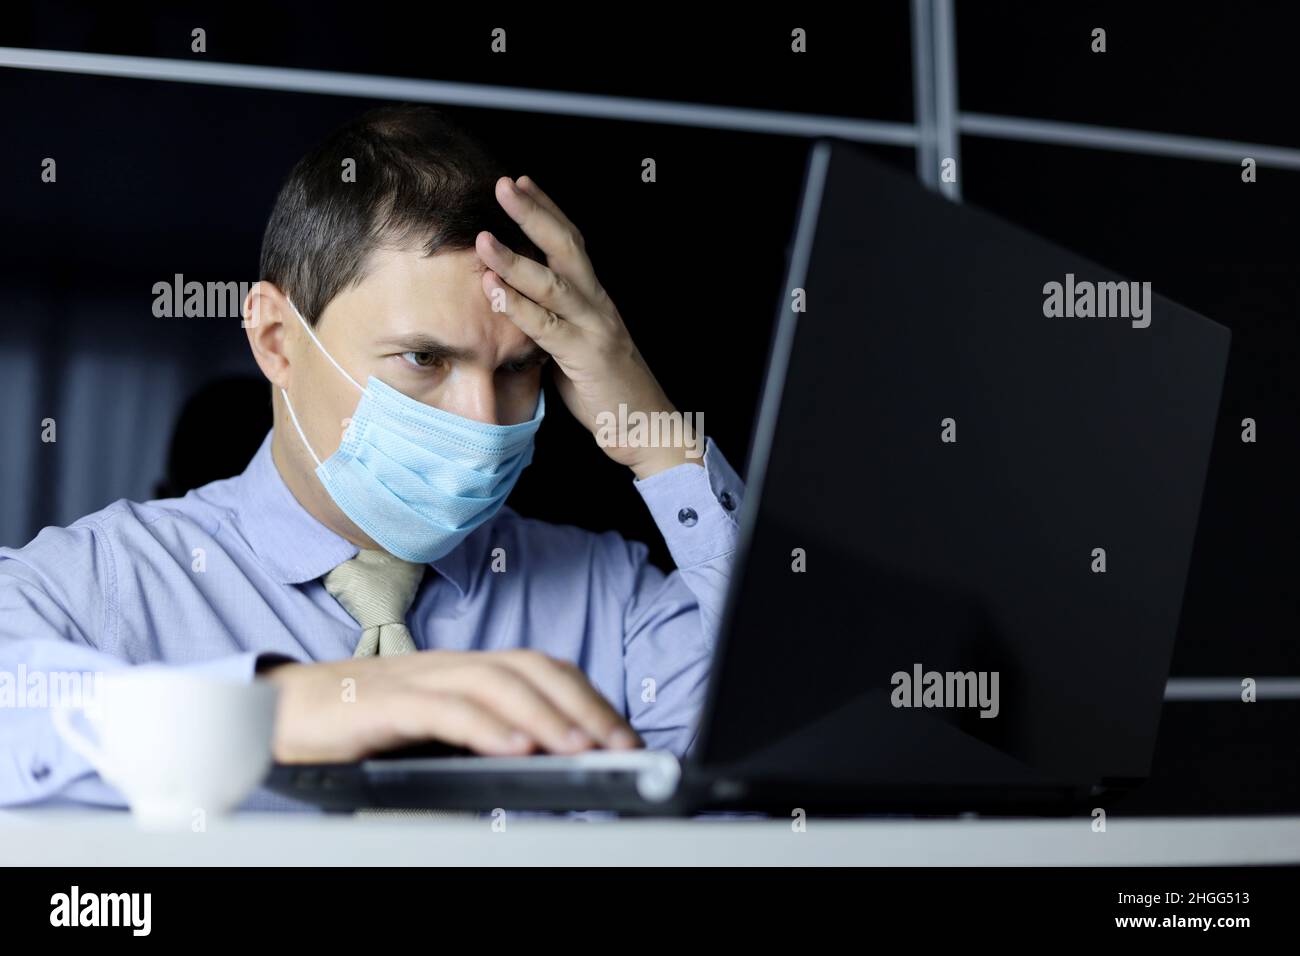 Uomo in maschera facciale e abiti da ufficio guardando concentrato sul display del computer portatile. Concetto di soluzione di un compito difficile Foto Stock